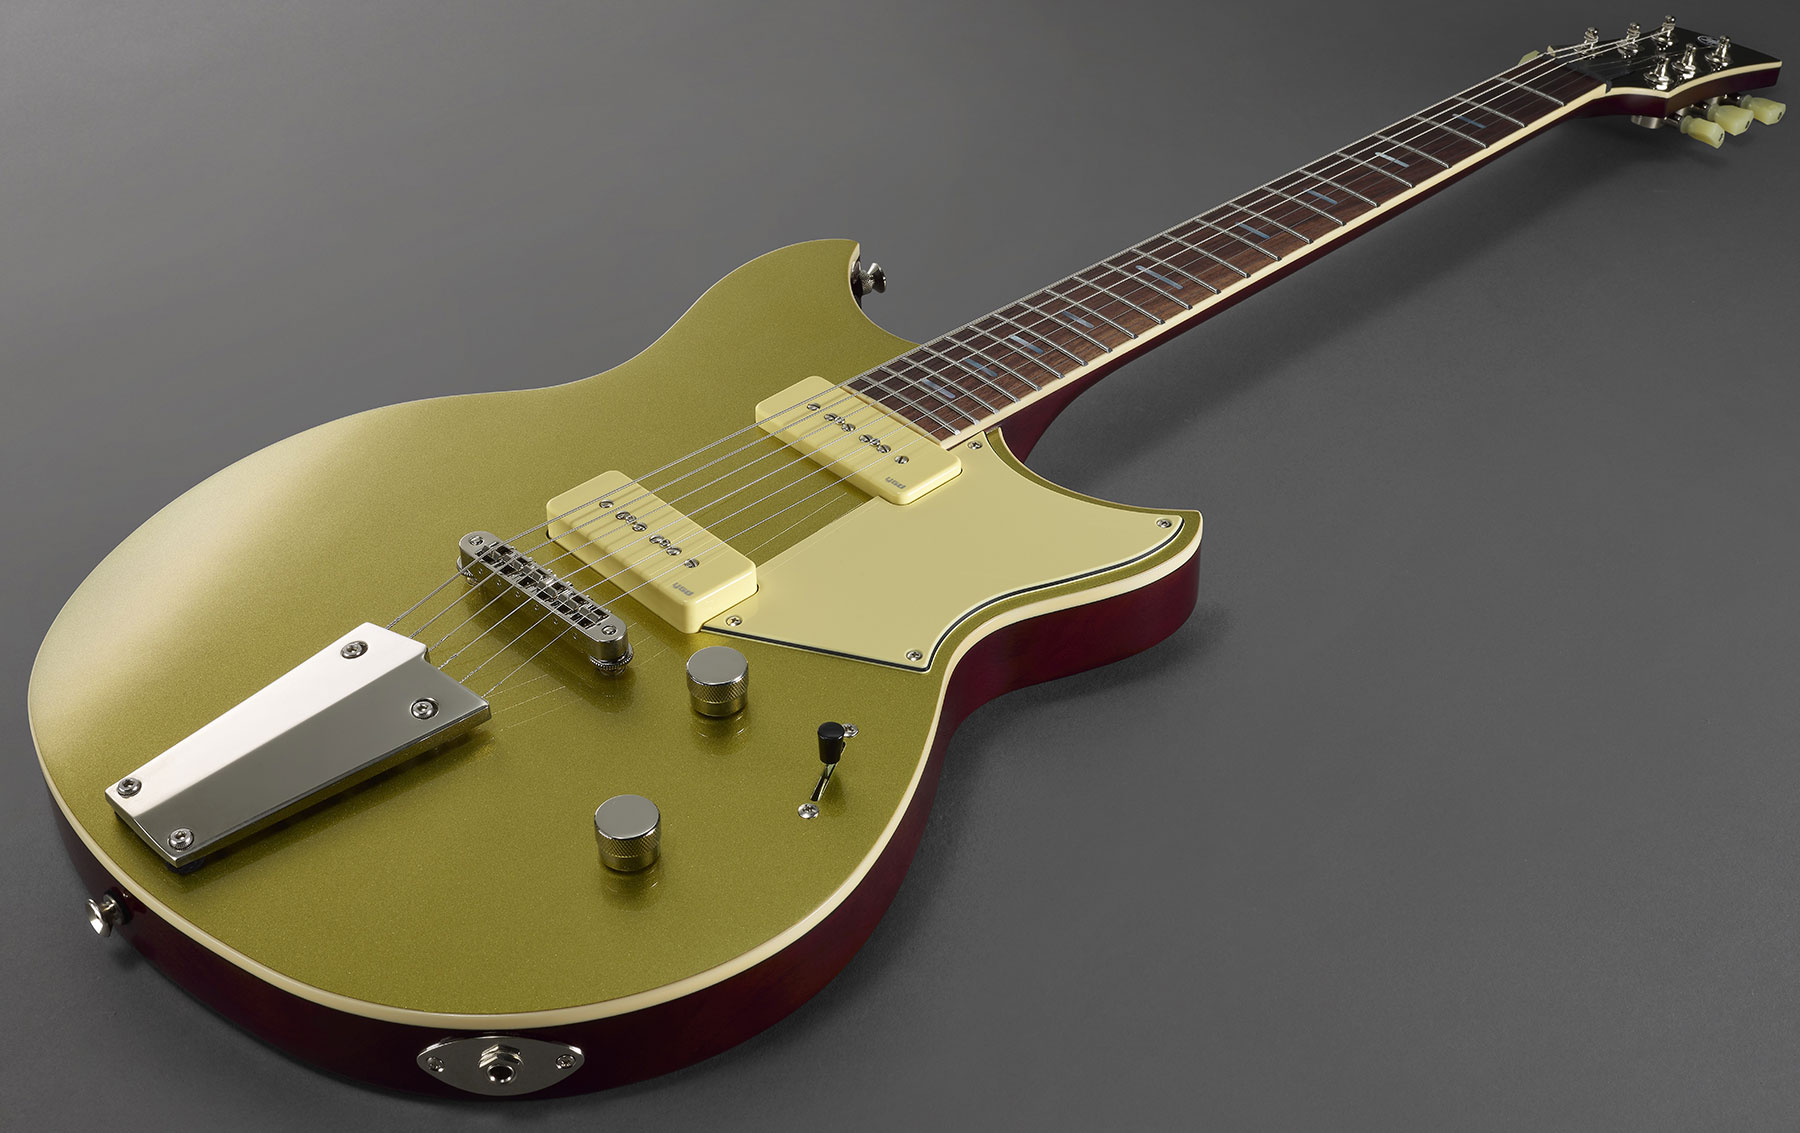 Yamaha Rsp02t Revstar Professionnal Jap 2p90 Ht Rw - Crisp Gold - Double cut electric guitar - Variation 3